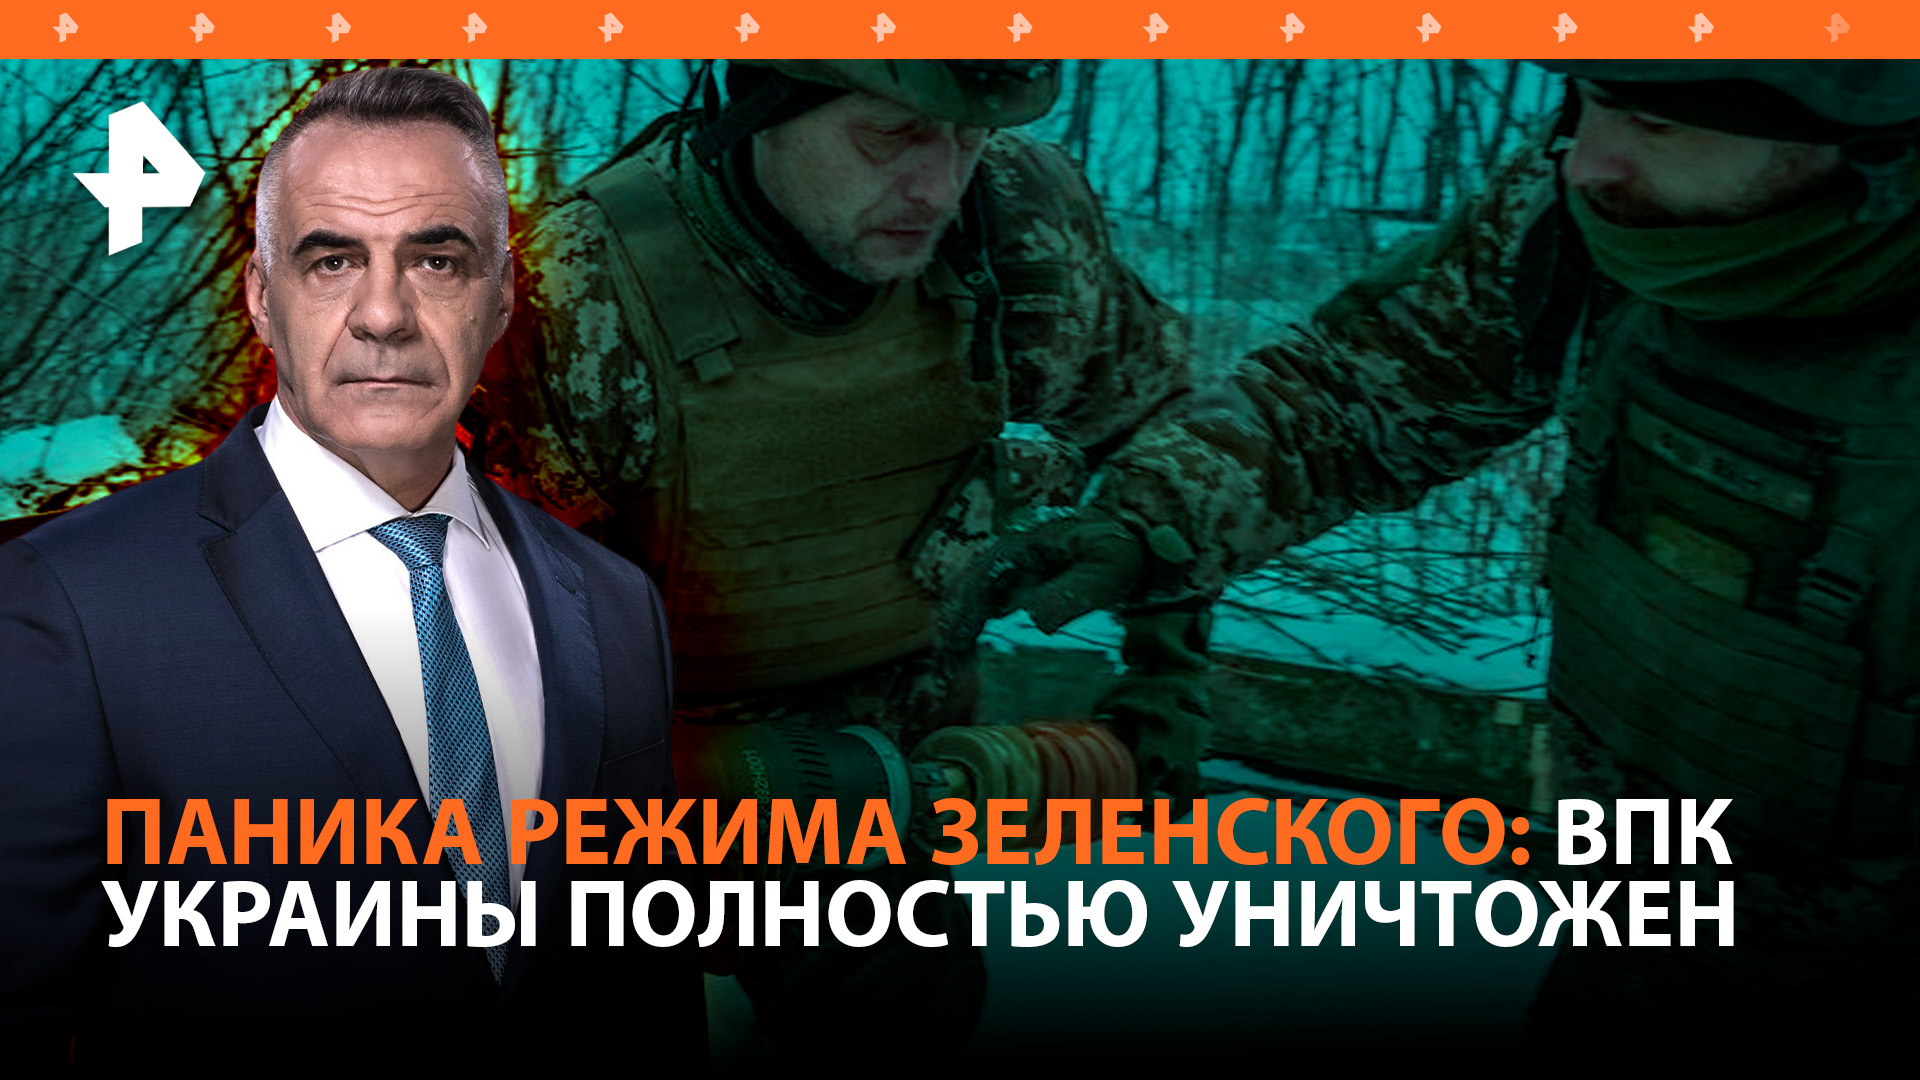 Украине нечем защищаться из-за снарядного голода после ударов армии РФ / Итоги с Петром Марченко